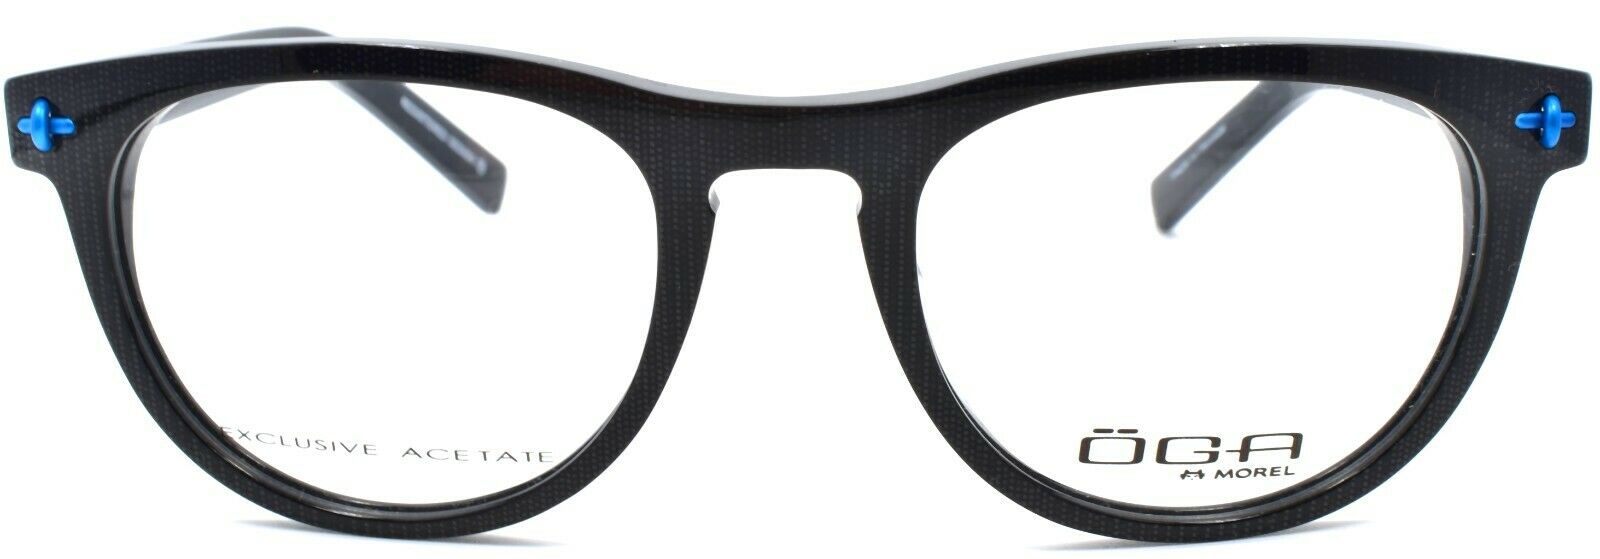 2-OGA by Morel 7949O NB010 Men's Eyeglasses Frames 51-21-125 Shiny Black France-3604770882568-IKSpecs